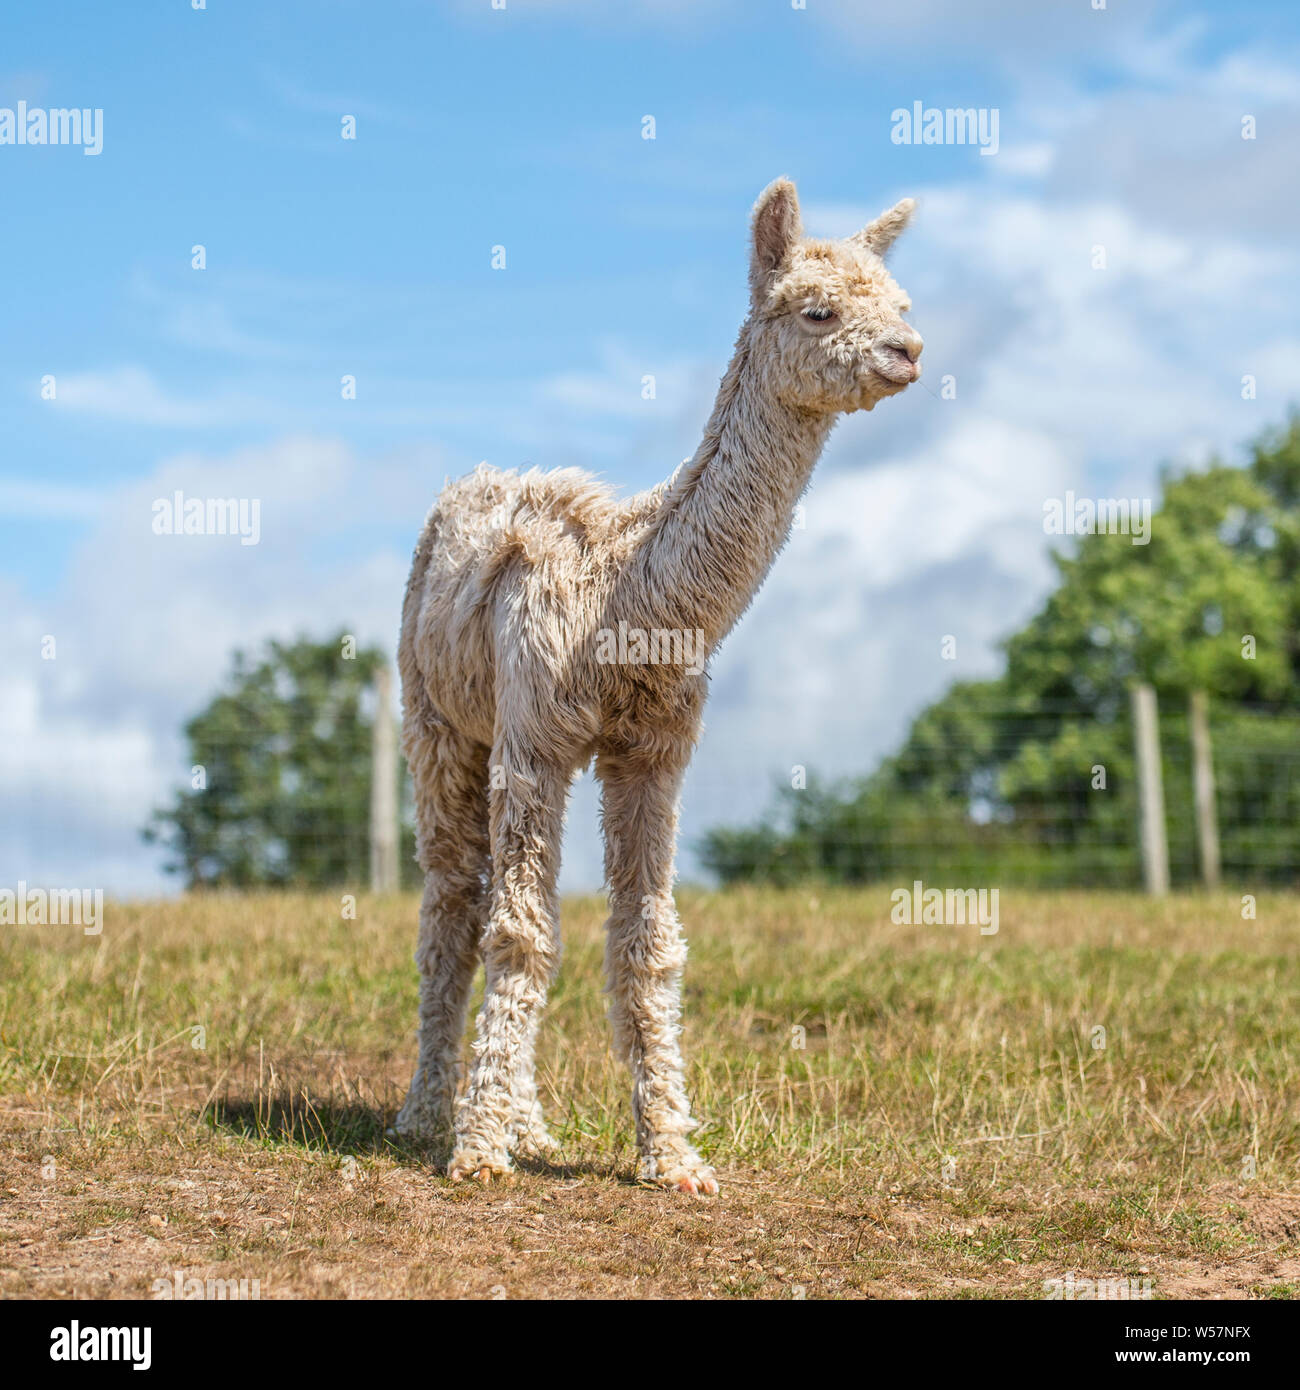 baby alpaca Stock Photo